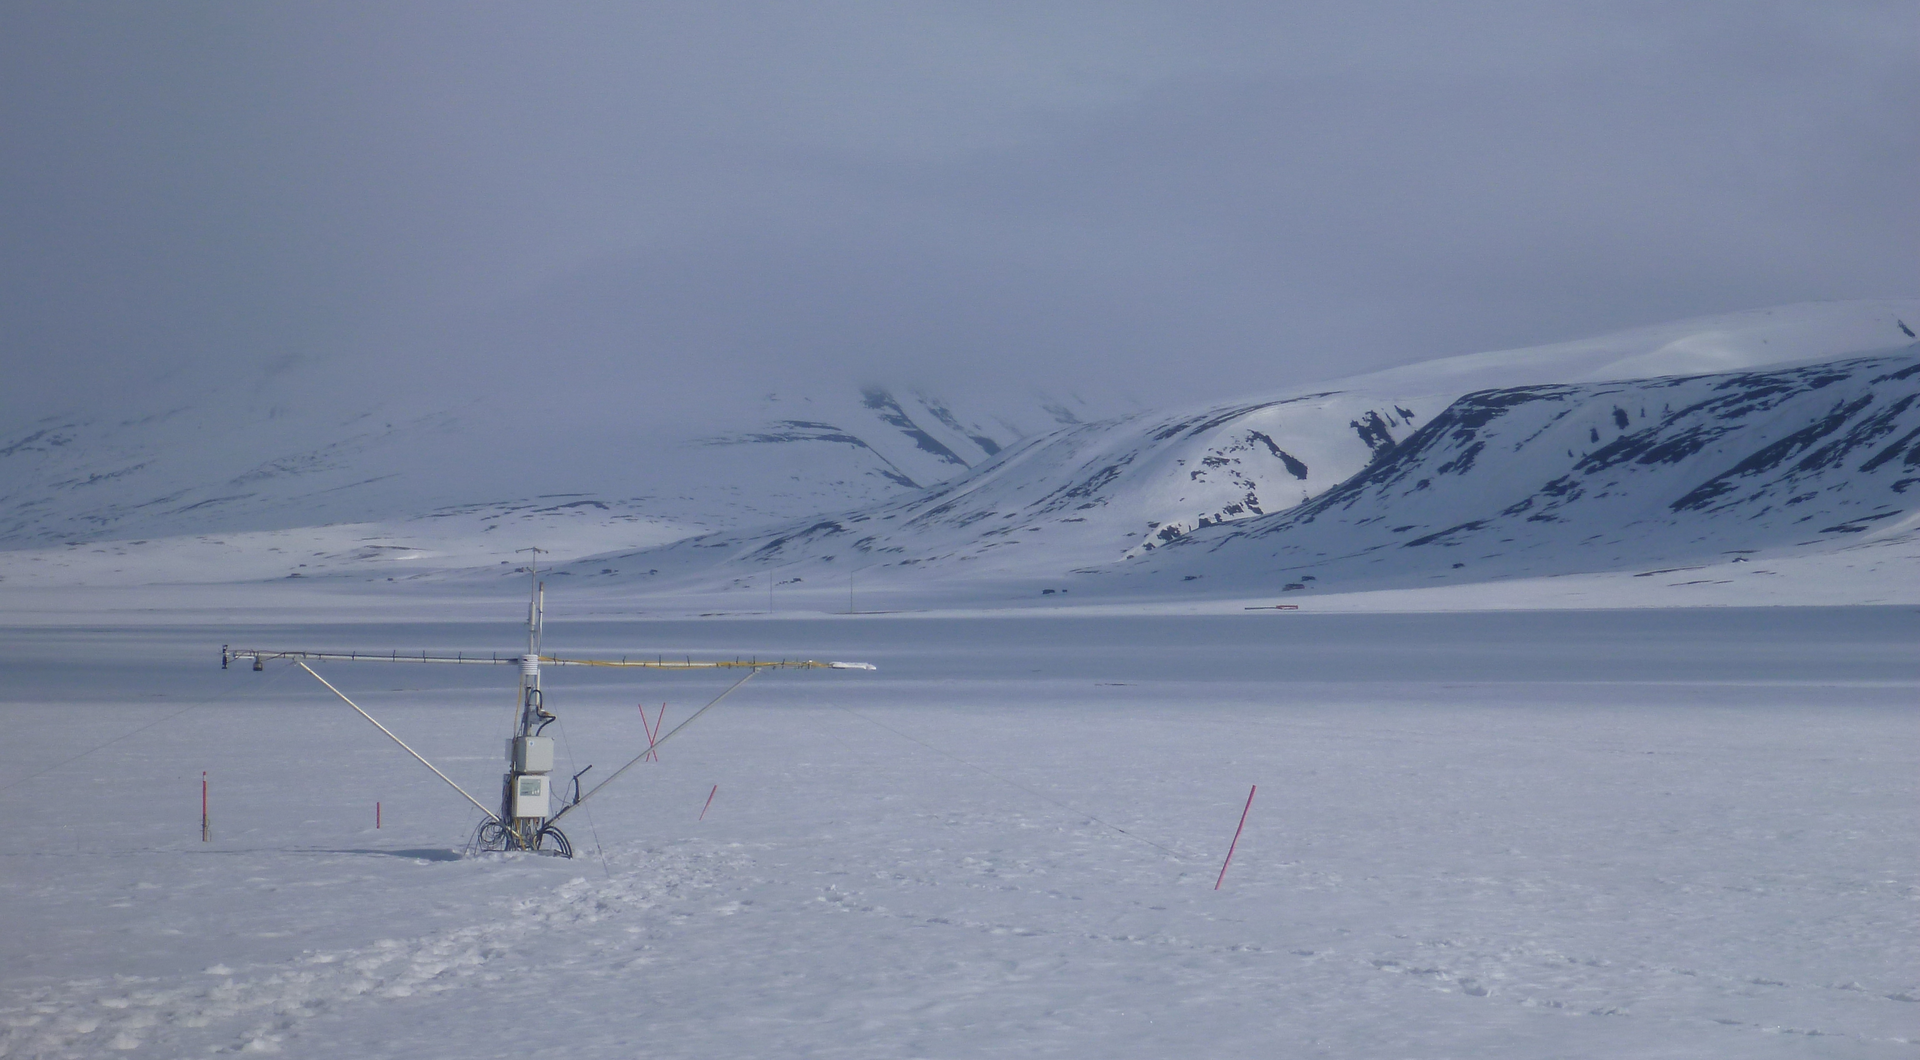 Ubetjente avanserte målestasjoner, såkalte «flux-towers» måler temperaturer, fuktighet og CO2 utslipp fra bakken. De står ute hele året, også i de iskalde polare vintermånedene i Arktis. Denne målestasjonen er i Adventdalen, Svalbard.